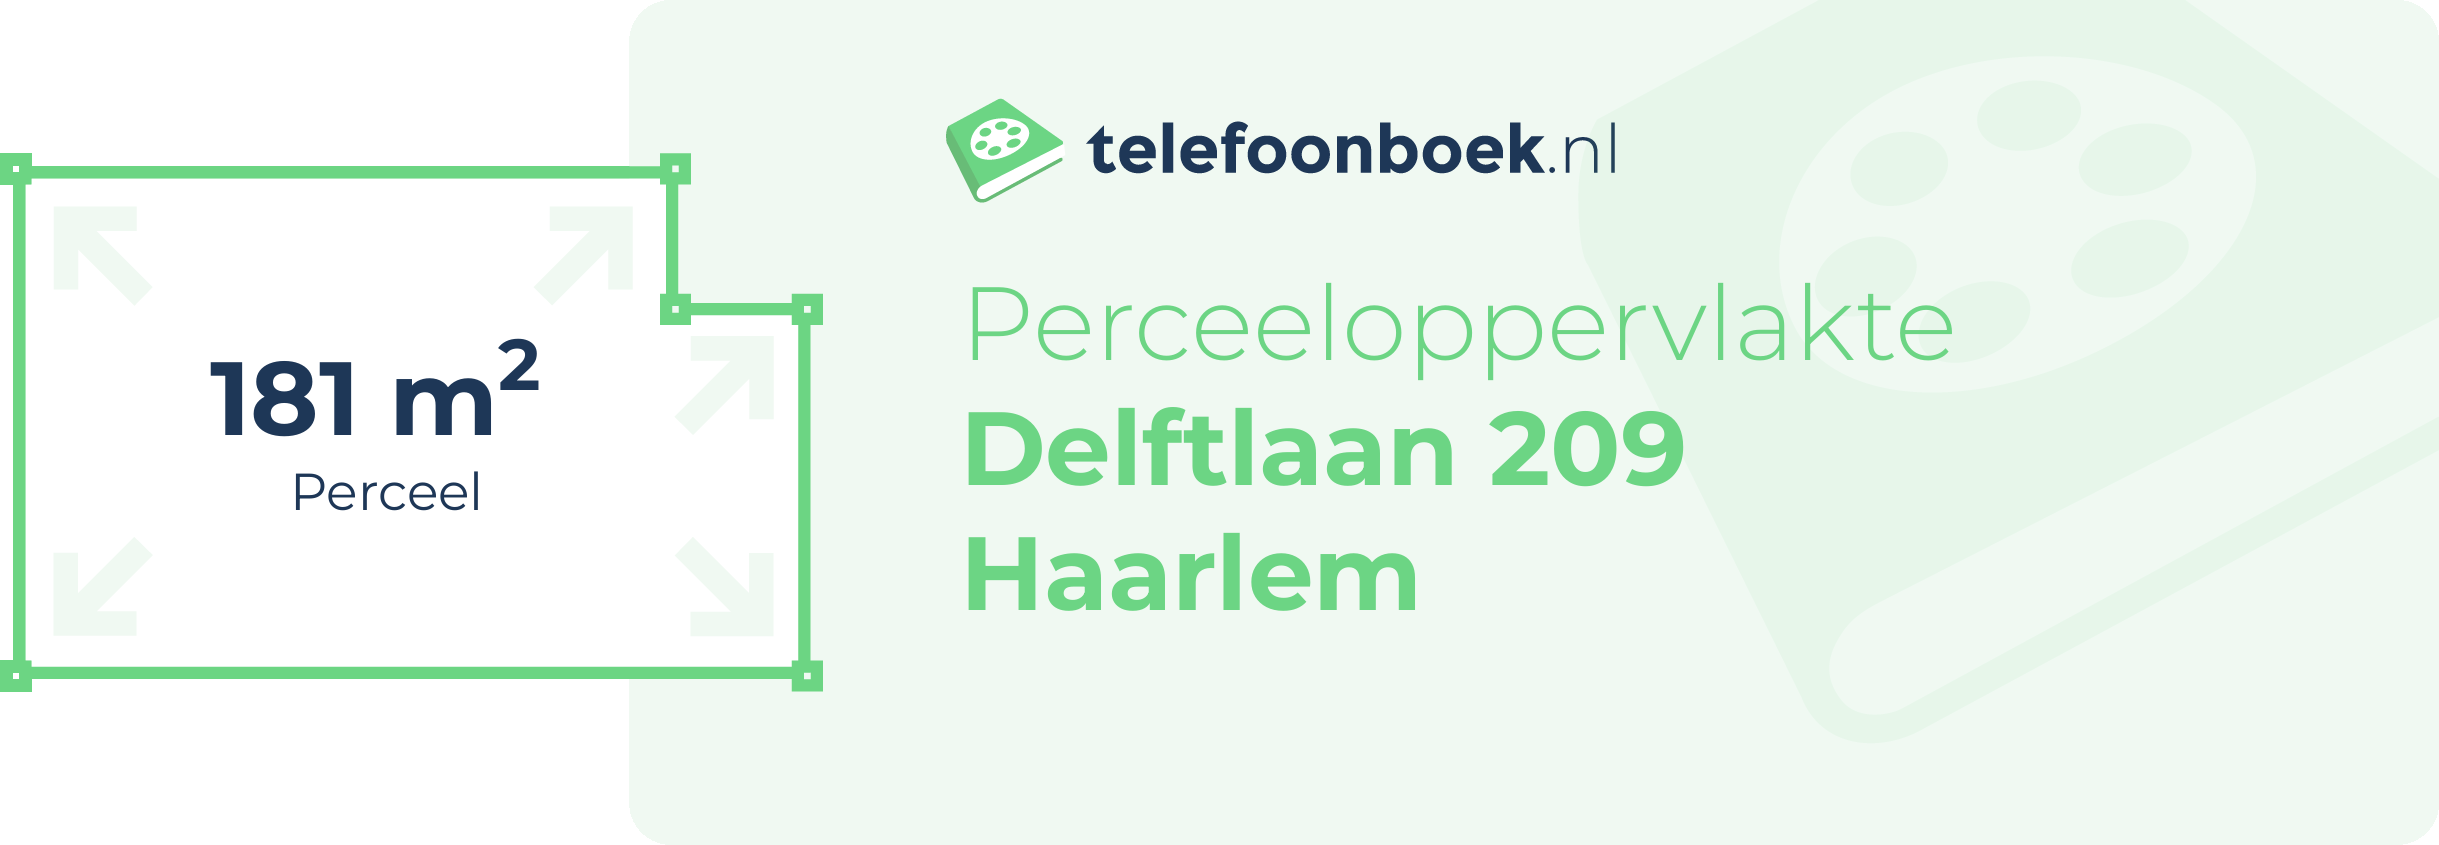 Perceeloppervlakte Delftlaan 209 Haarlem